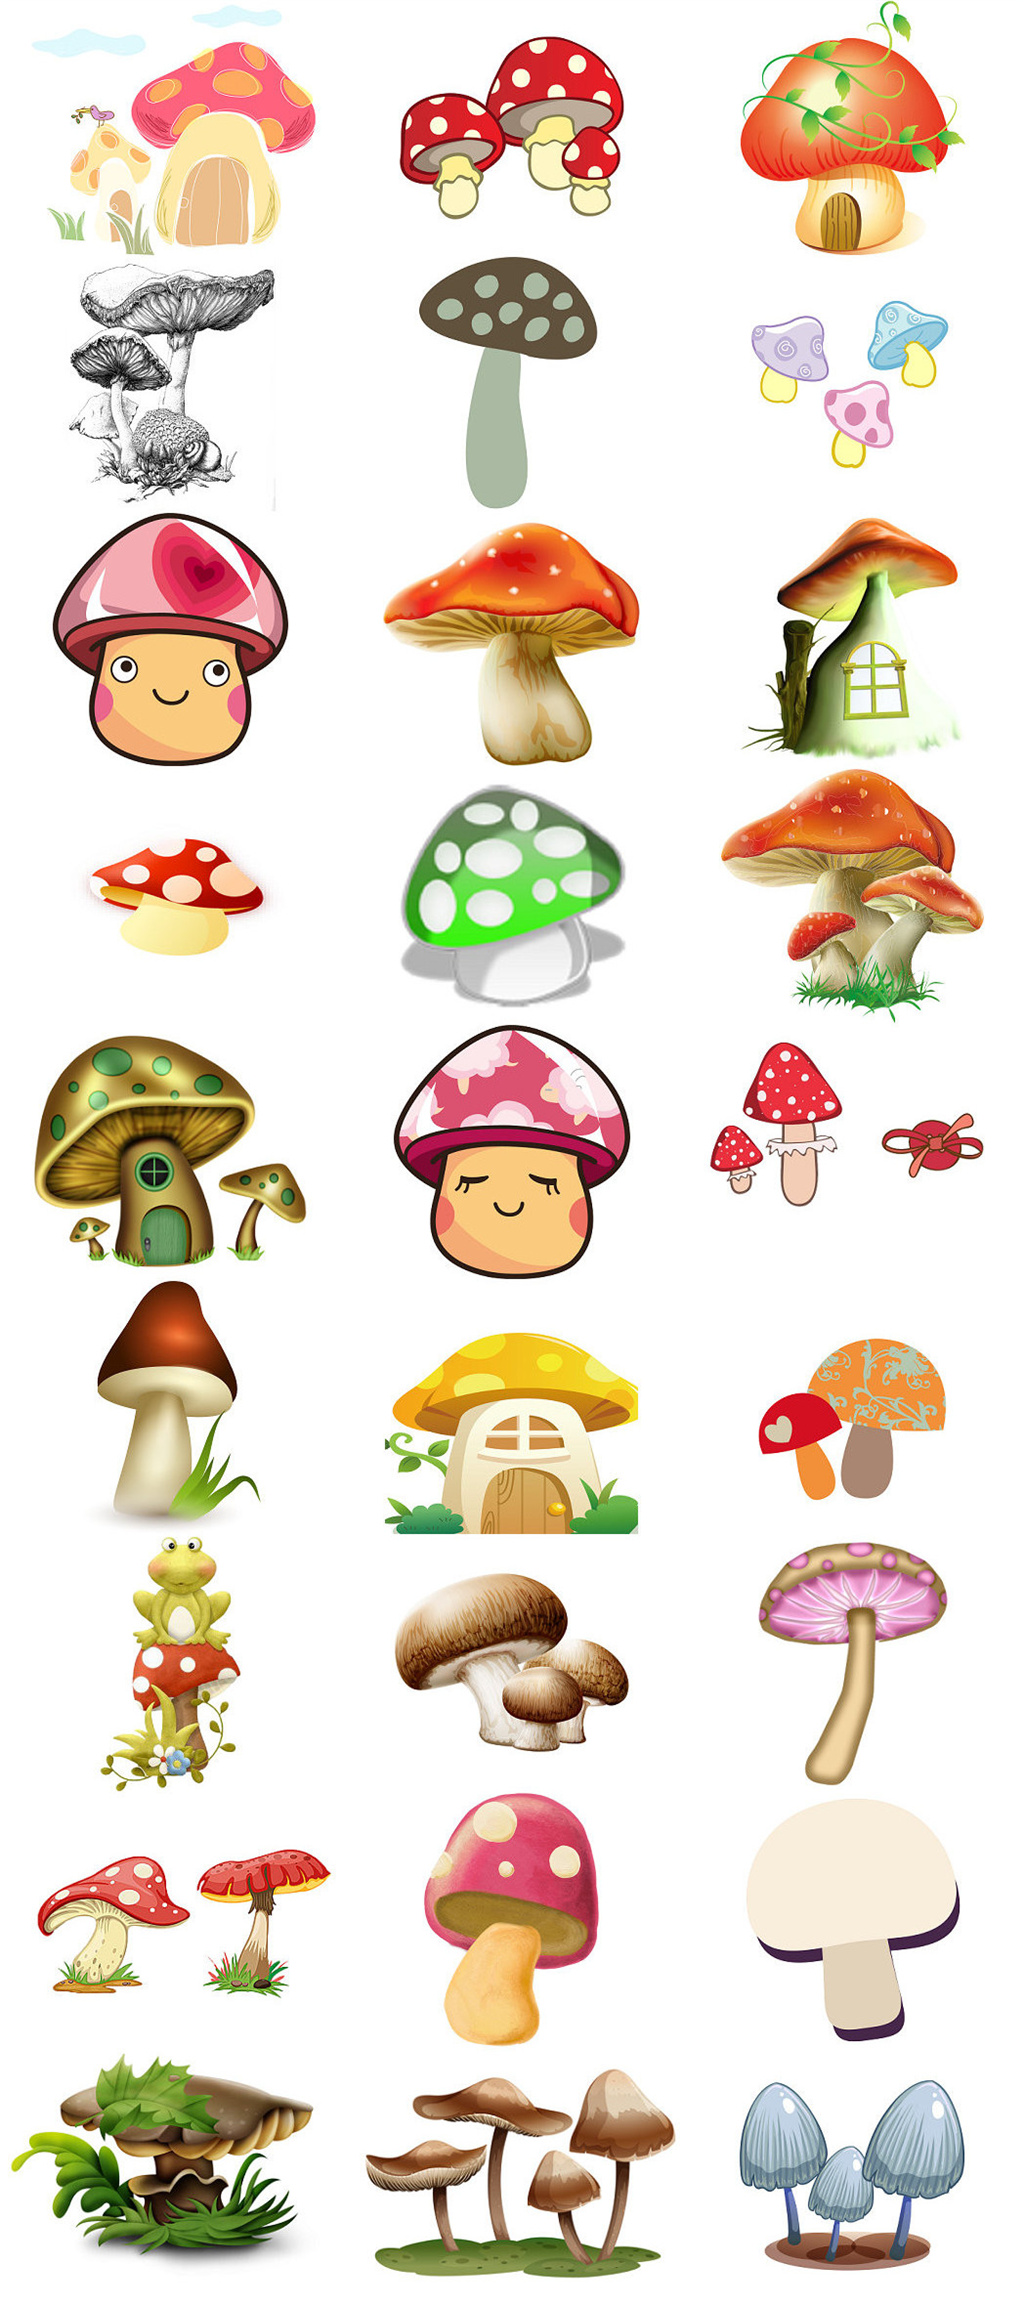 可爱蘑菇卡通图片大全